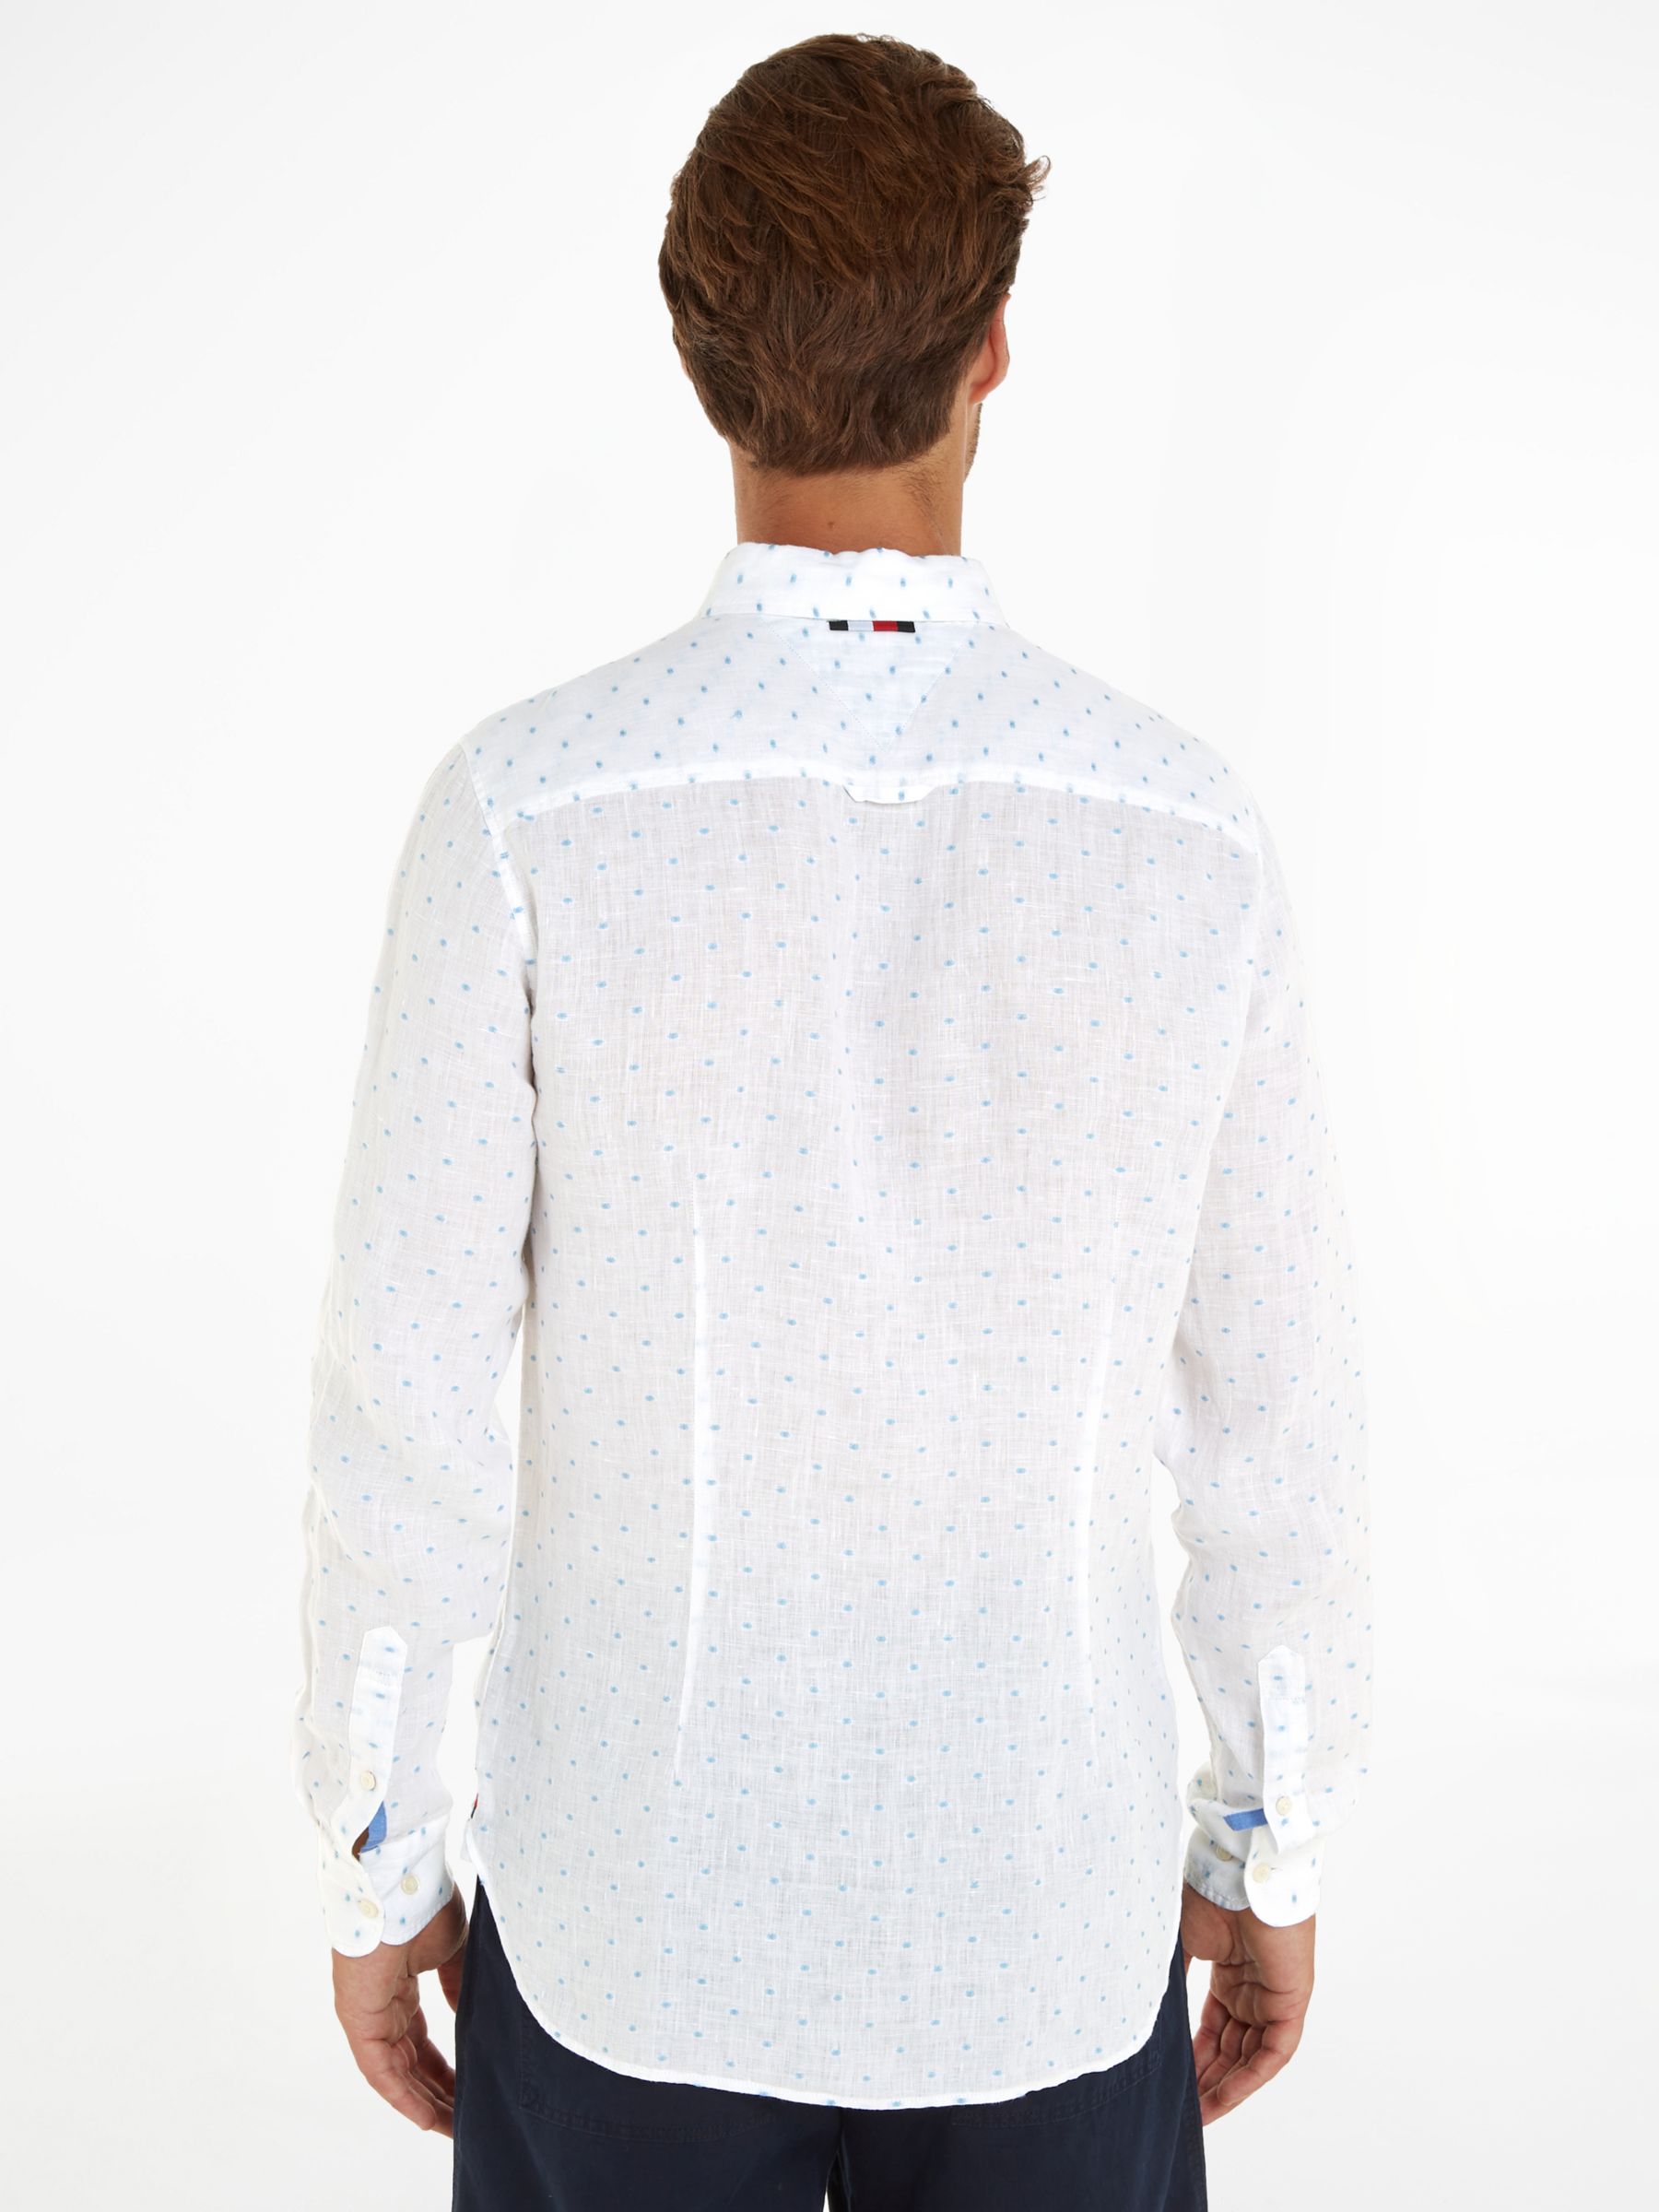 Buy Tommy Hilfiger Linen Polka Dot Shirt, White Online at johnlewis.com